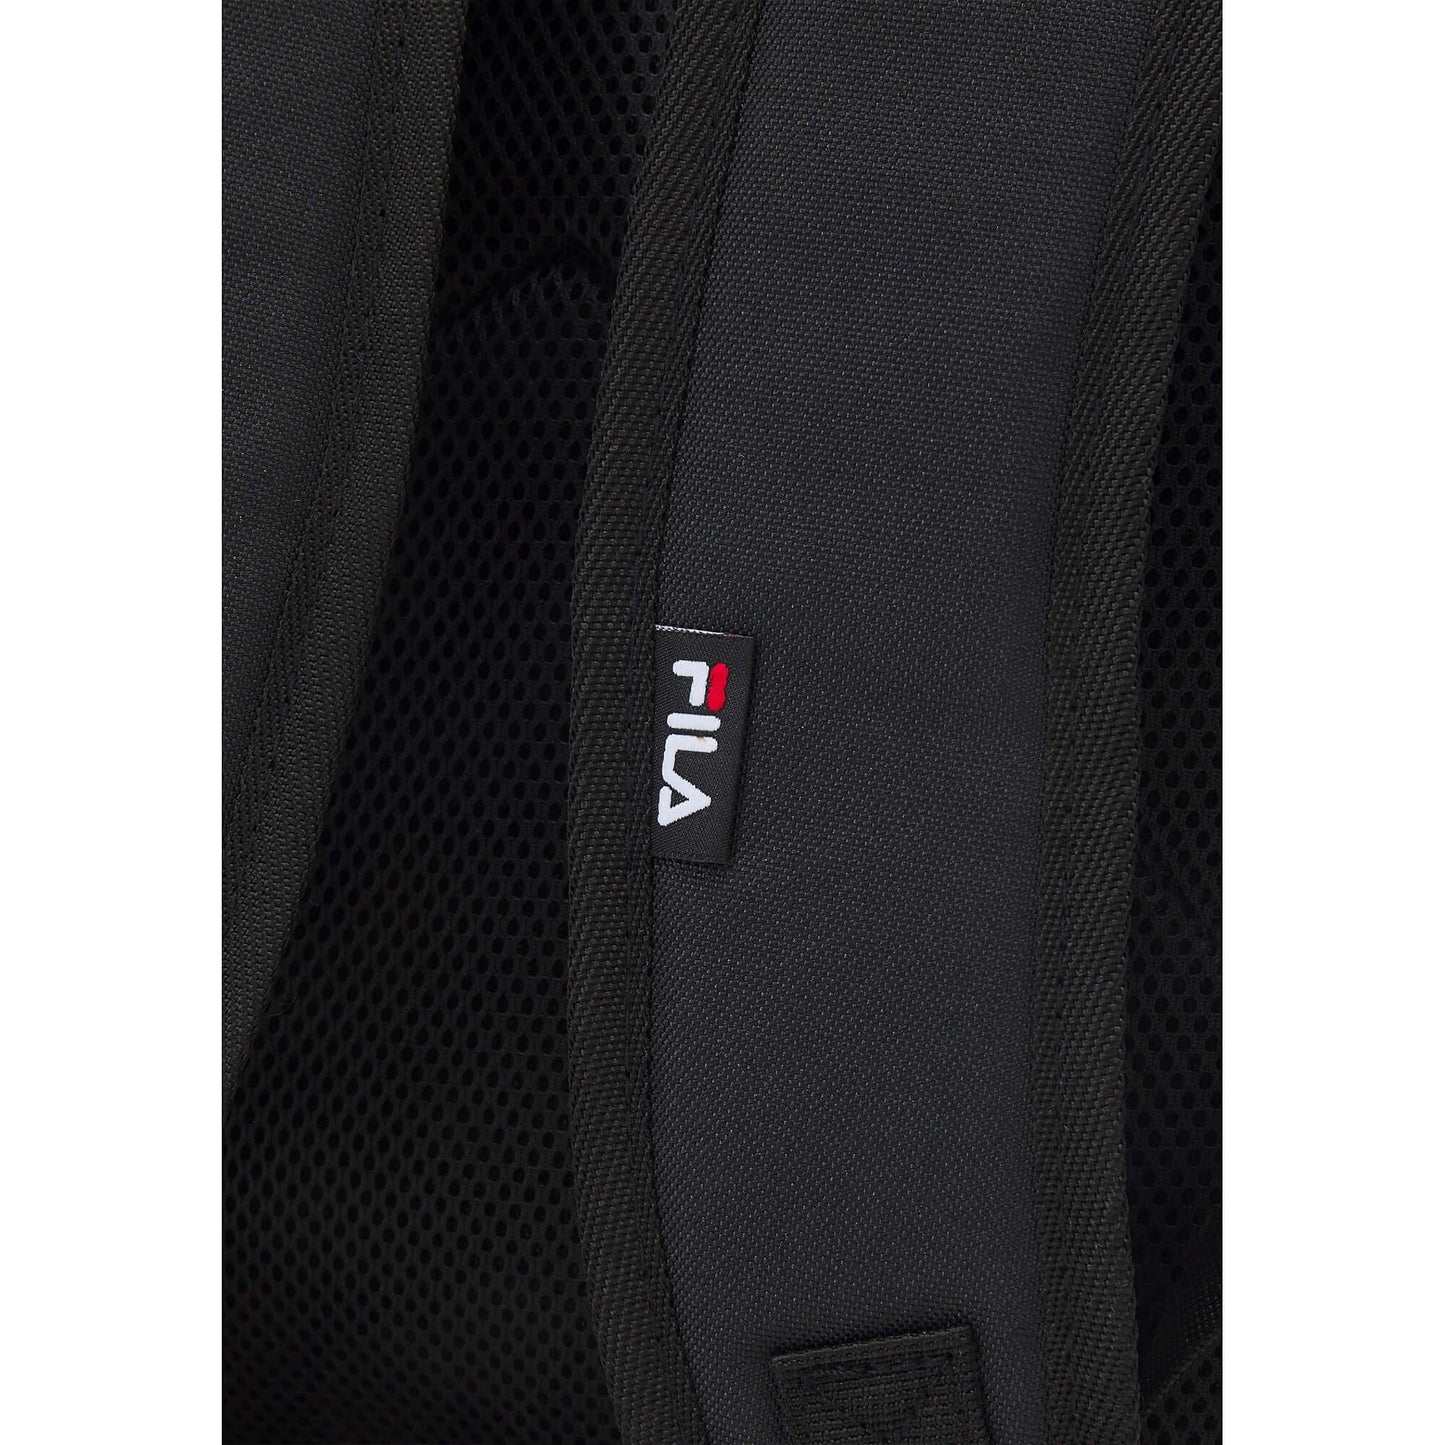 Fila Fulda Backpack Squared Pocket Black